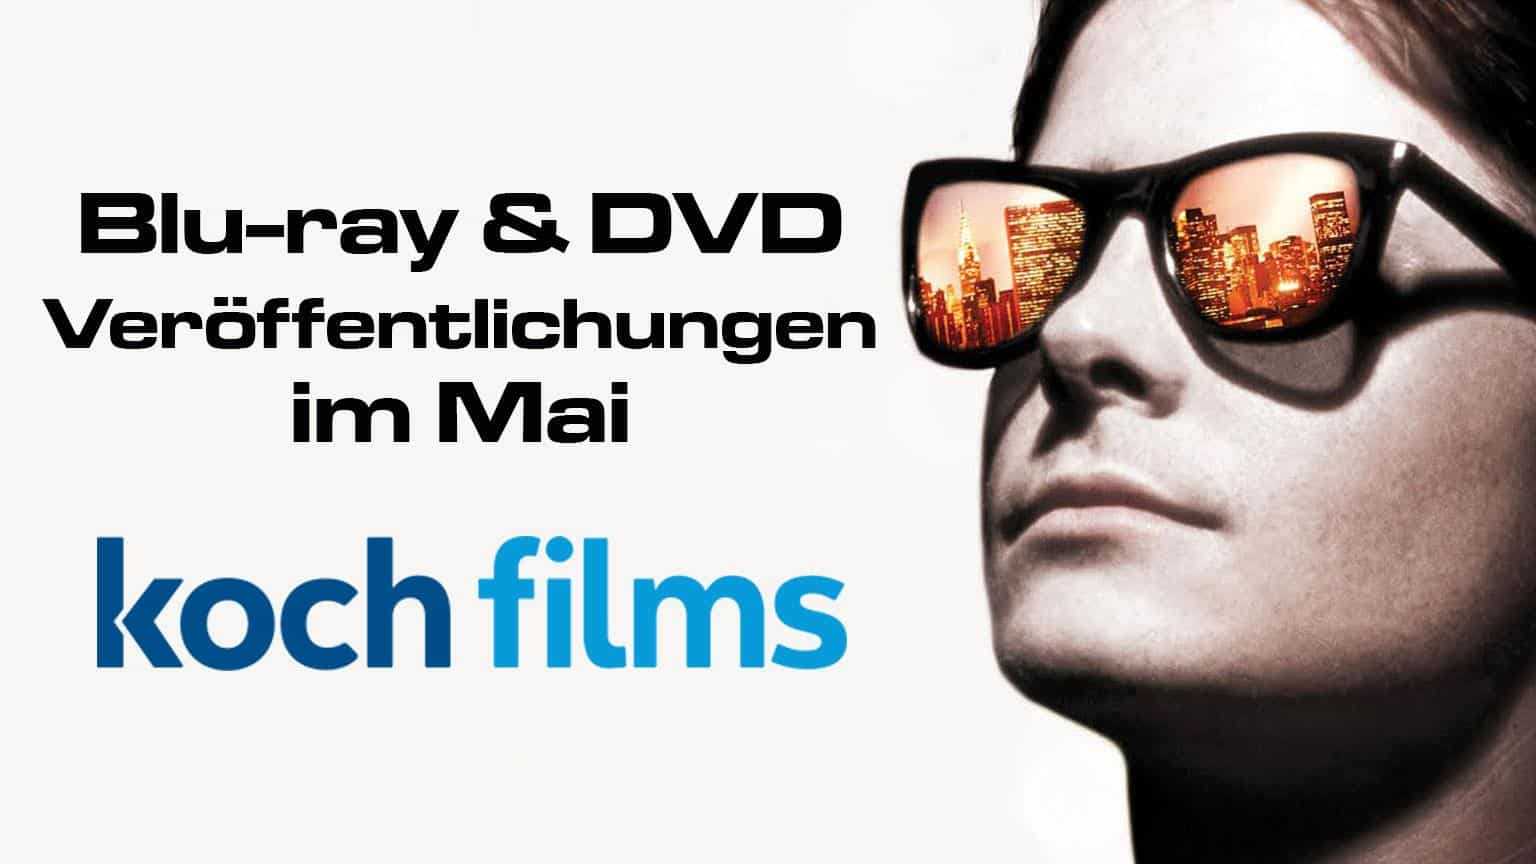 KochFilms Mai Blu-ray und DVD Veröffentlichungen Artikelbild